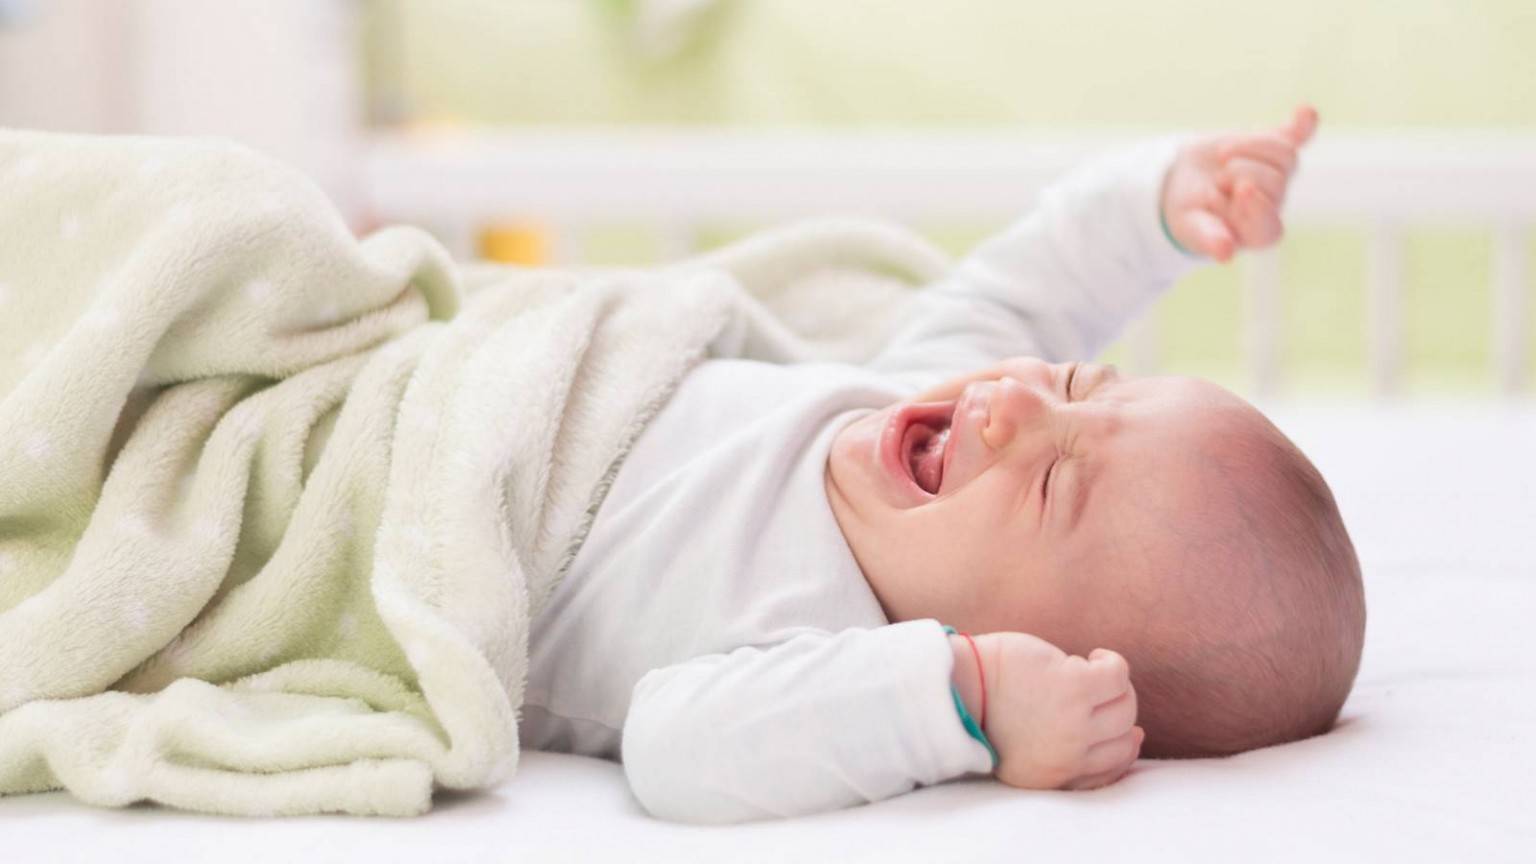 21 причина детского плача во сне – как реагировать родителям